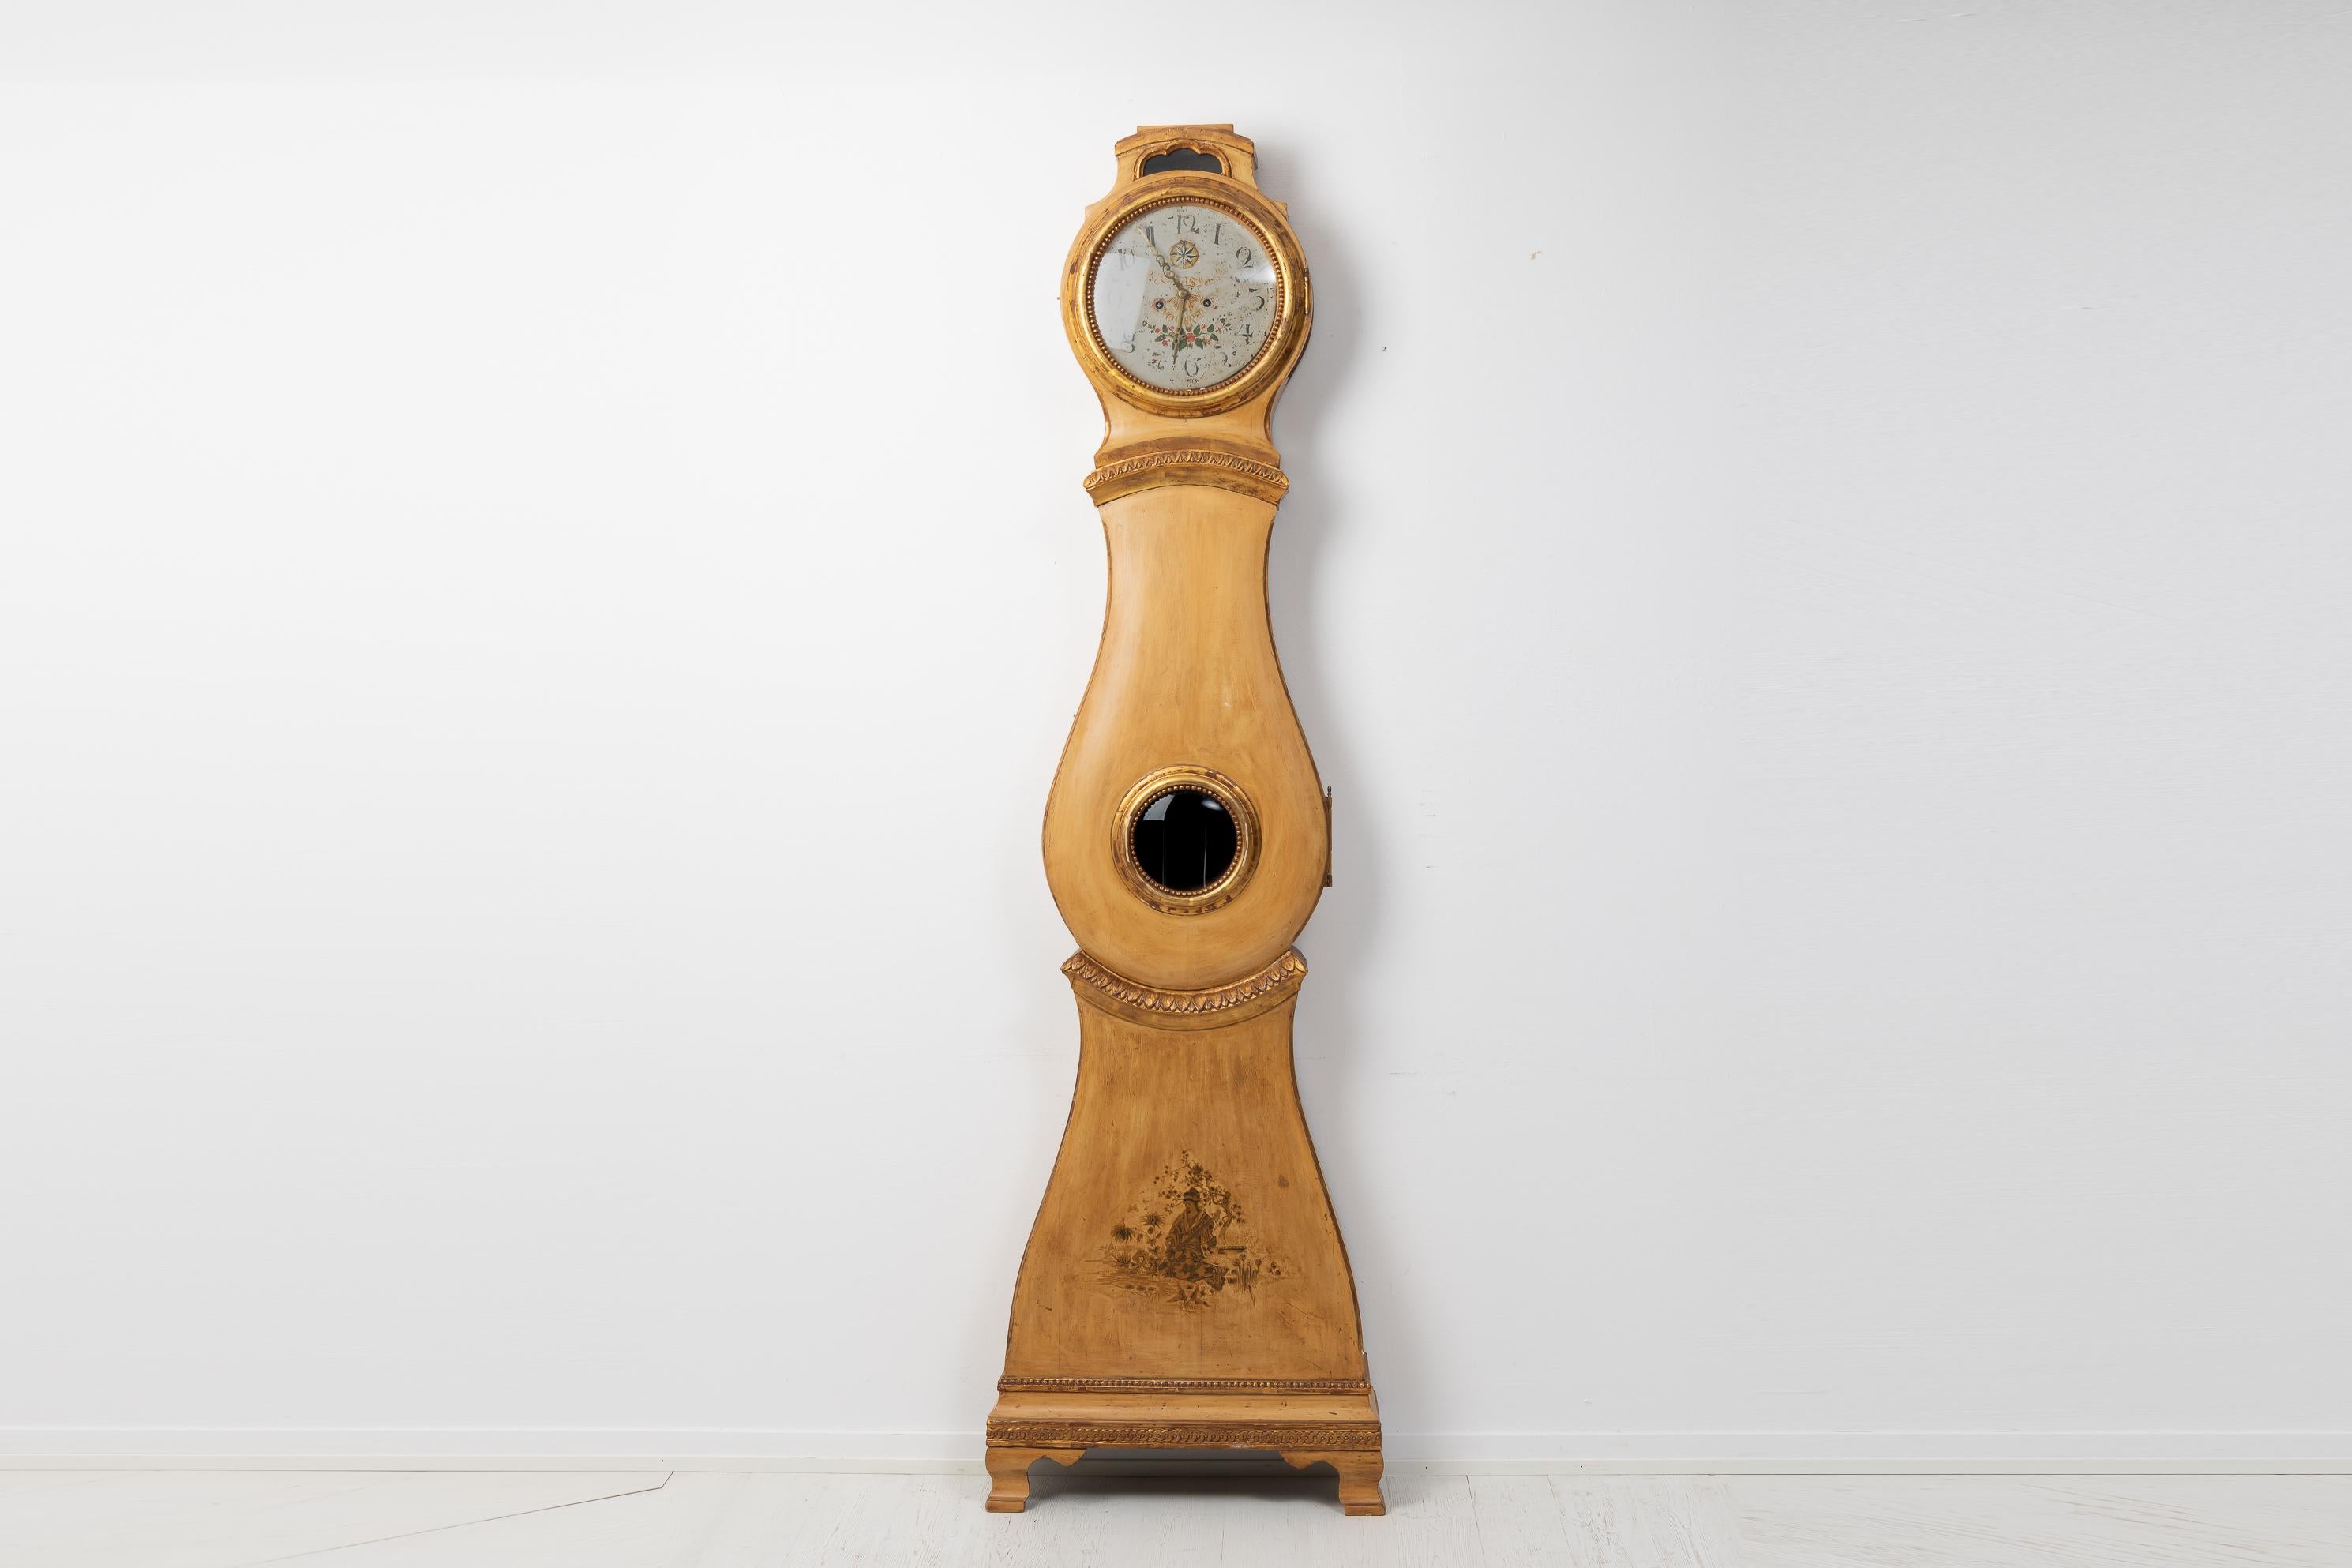 Ancienne pendule gustavienne à long boîtier en pin peint de Suède. L'horloge a un décor sculpté à la main dans le bois avec une peinture plus ancienne datant de la fin des années 1800. La peinture s'est légèrement dégradée avec le temps, ce qui